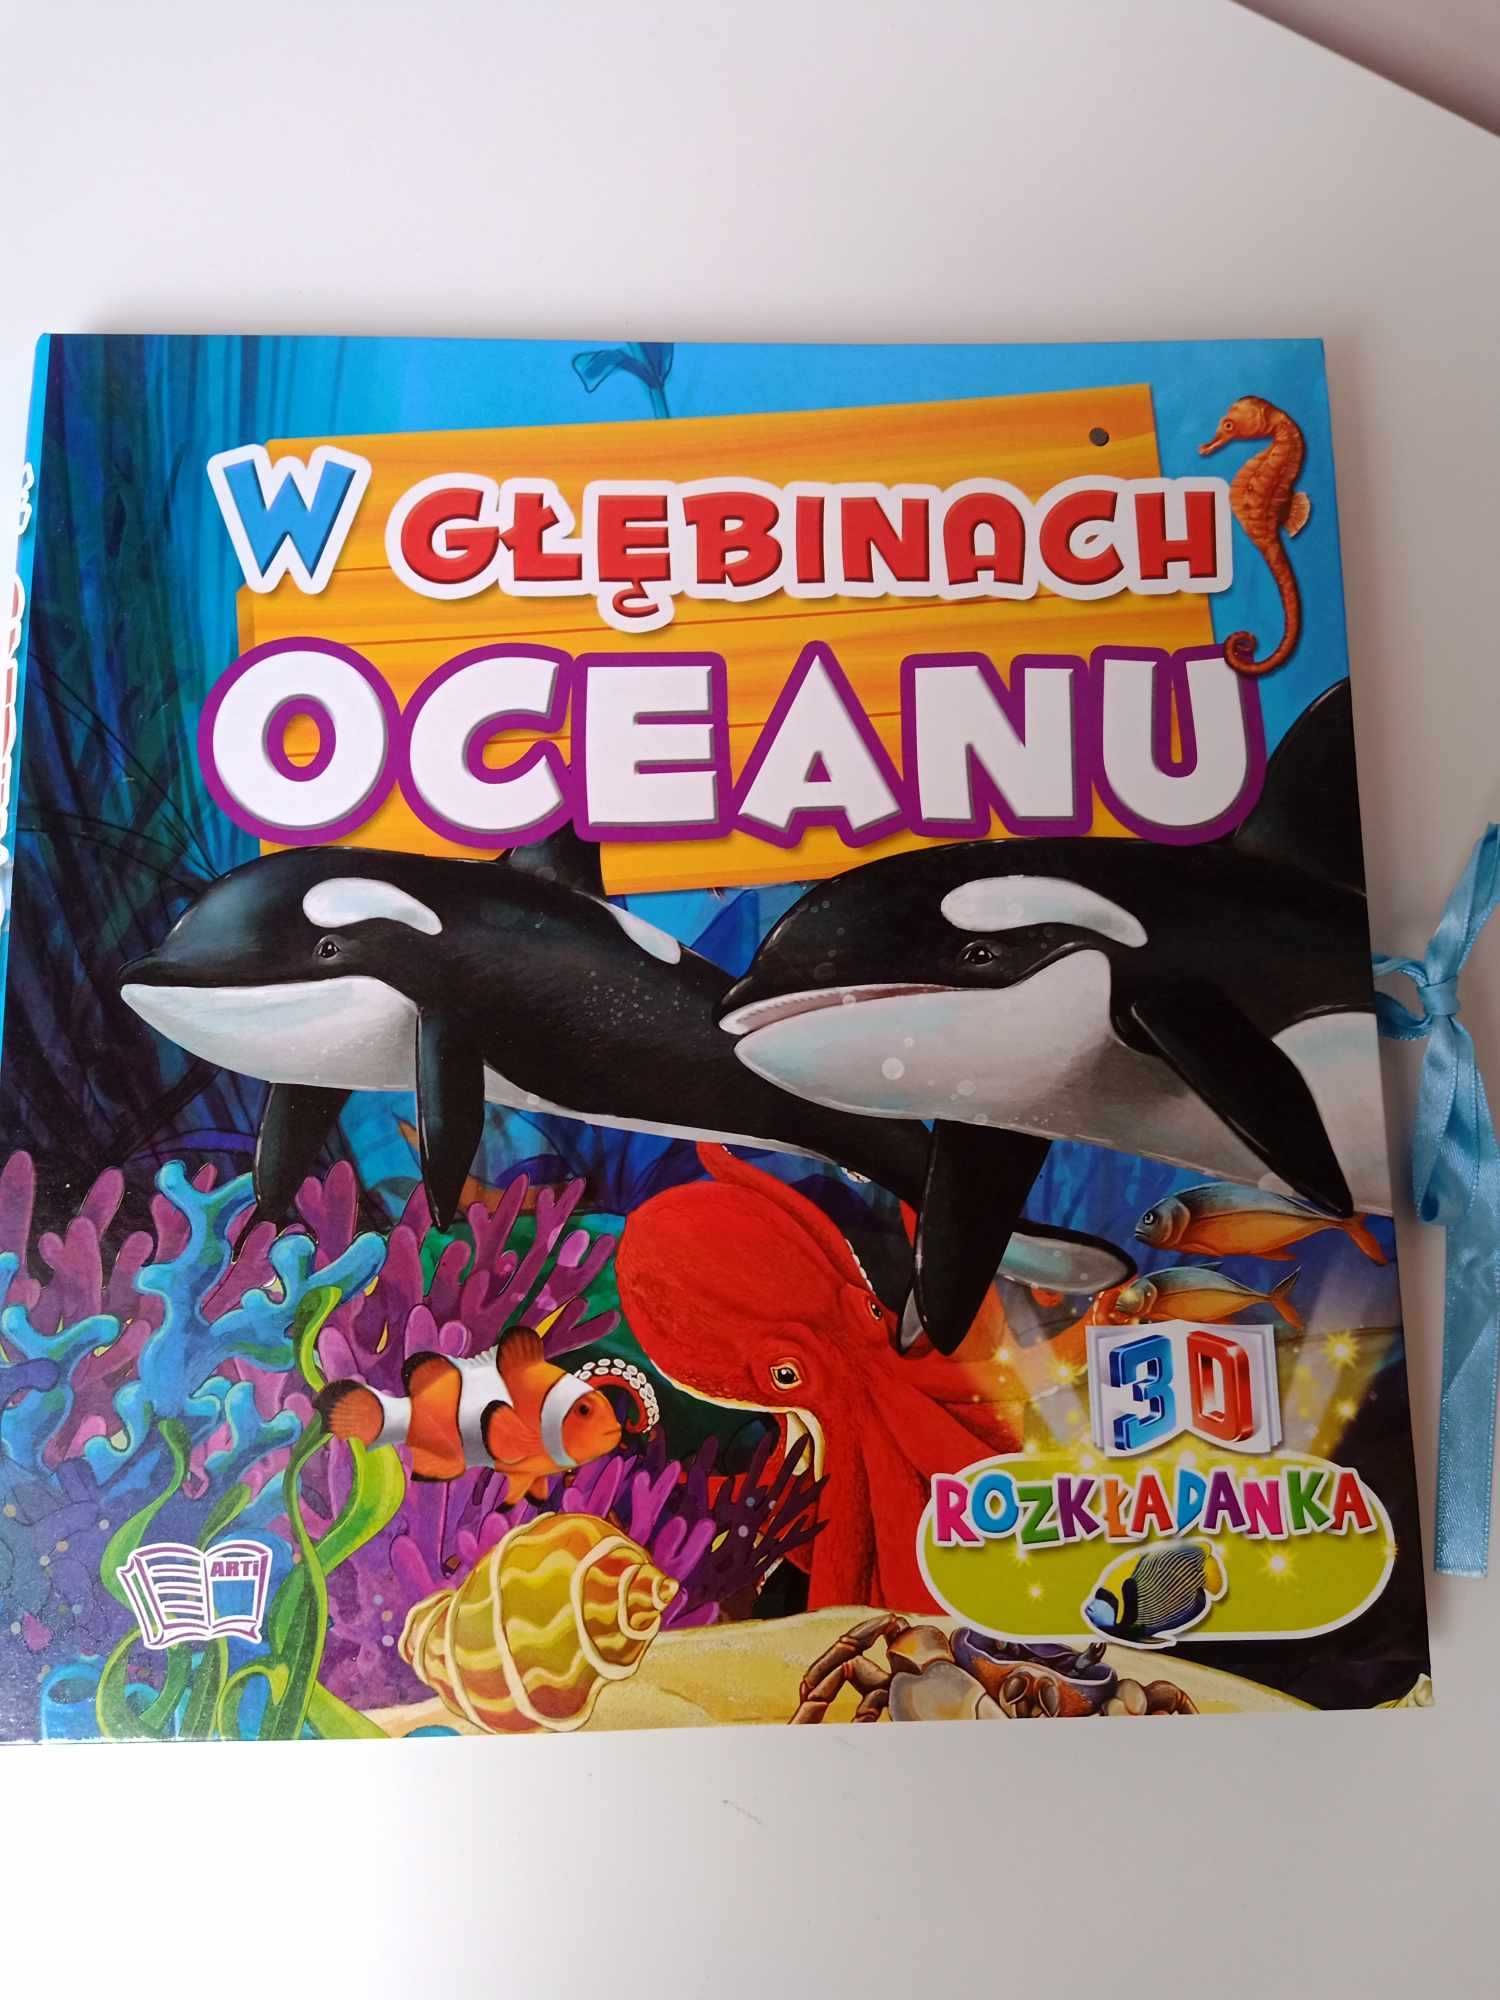 W głębiach oceanu, książka dla dzieci, 3D, tanio